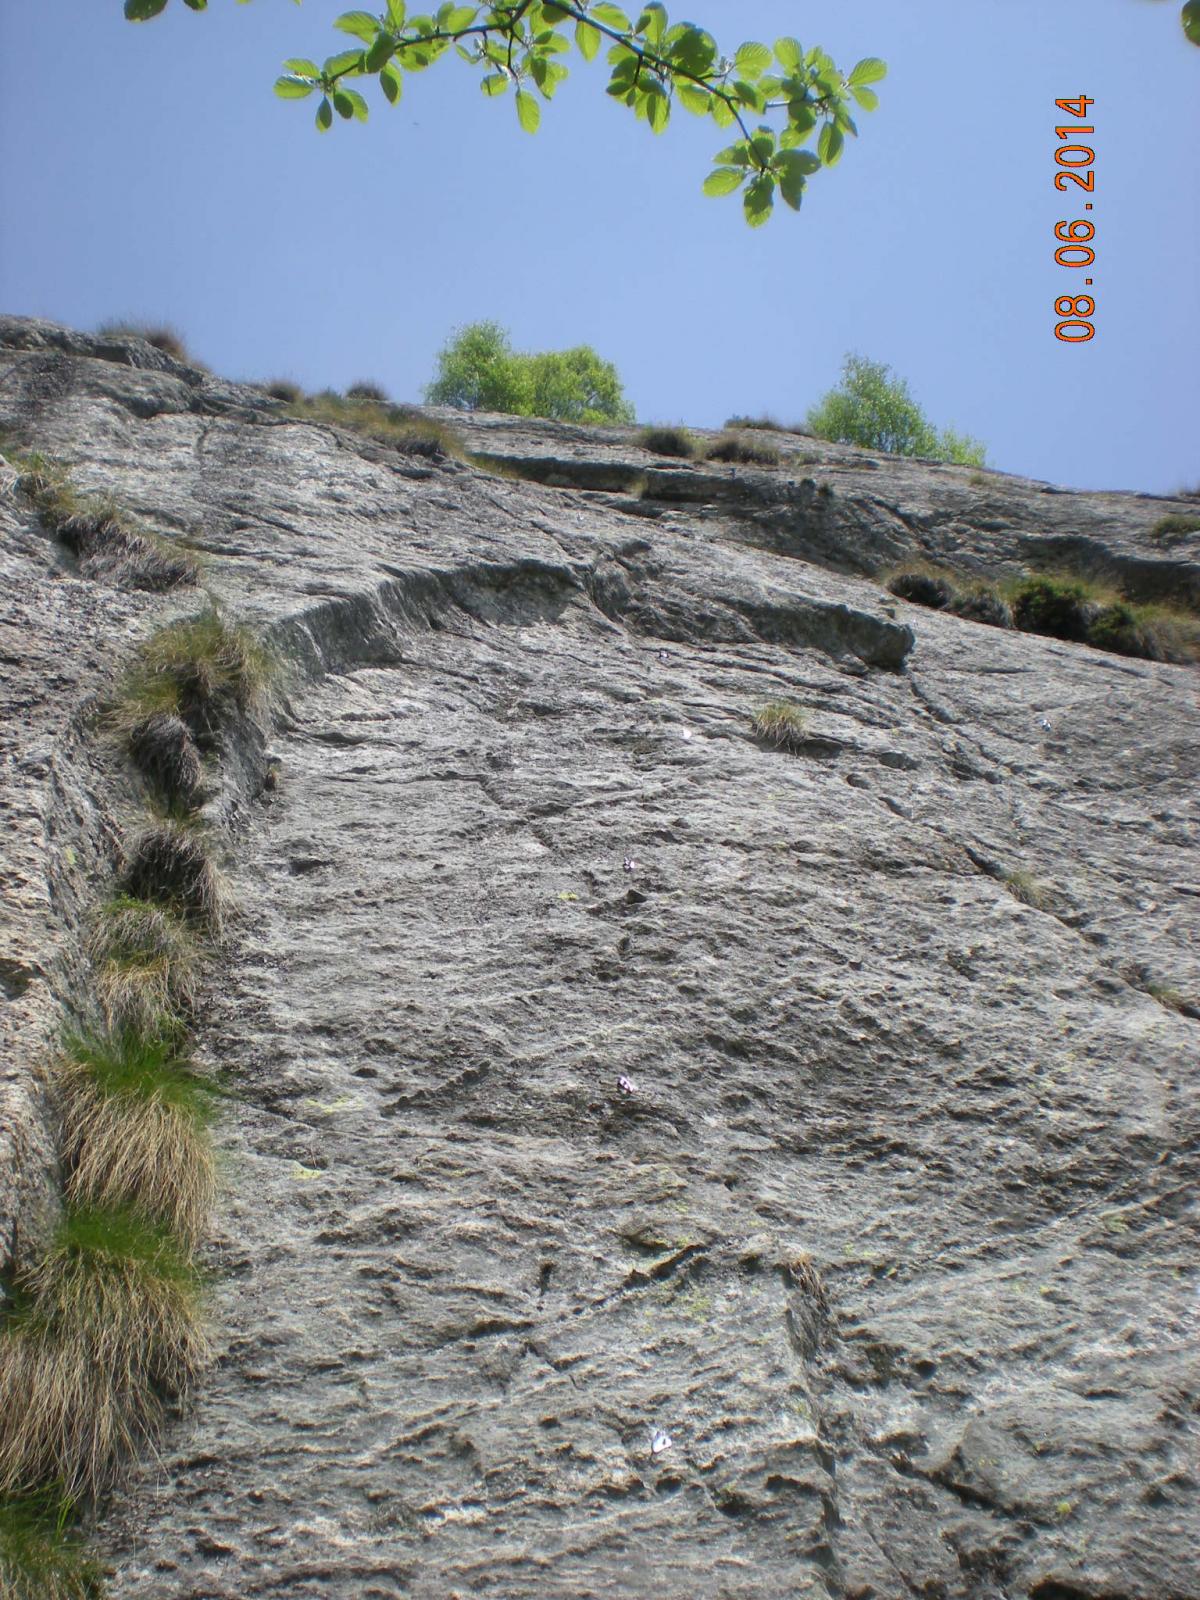 placche ben chiodate di bella roccia, inevitabili erba e licheni